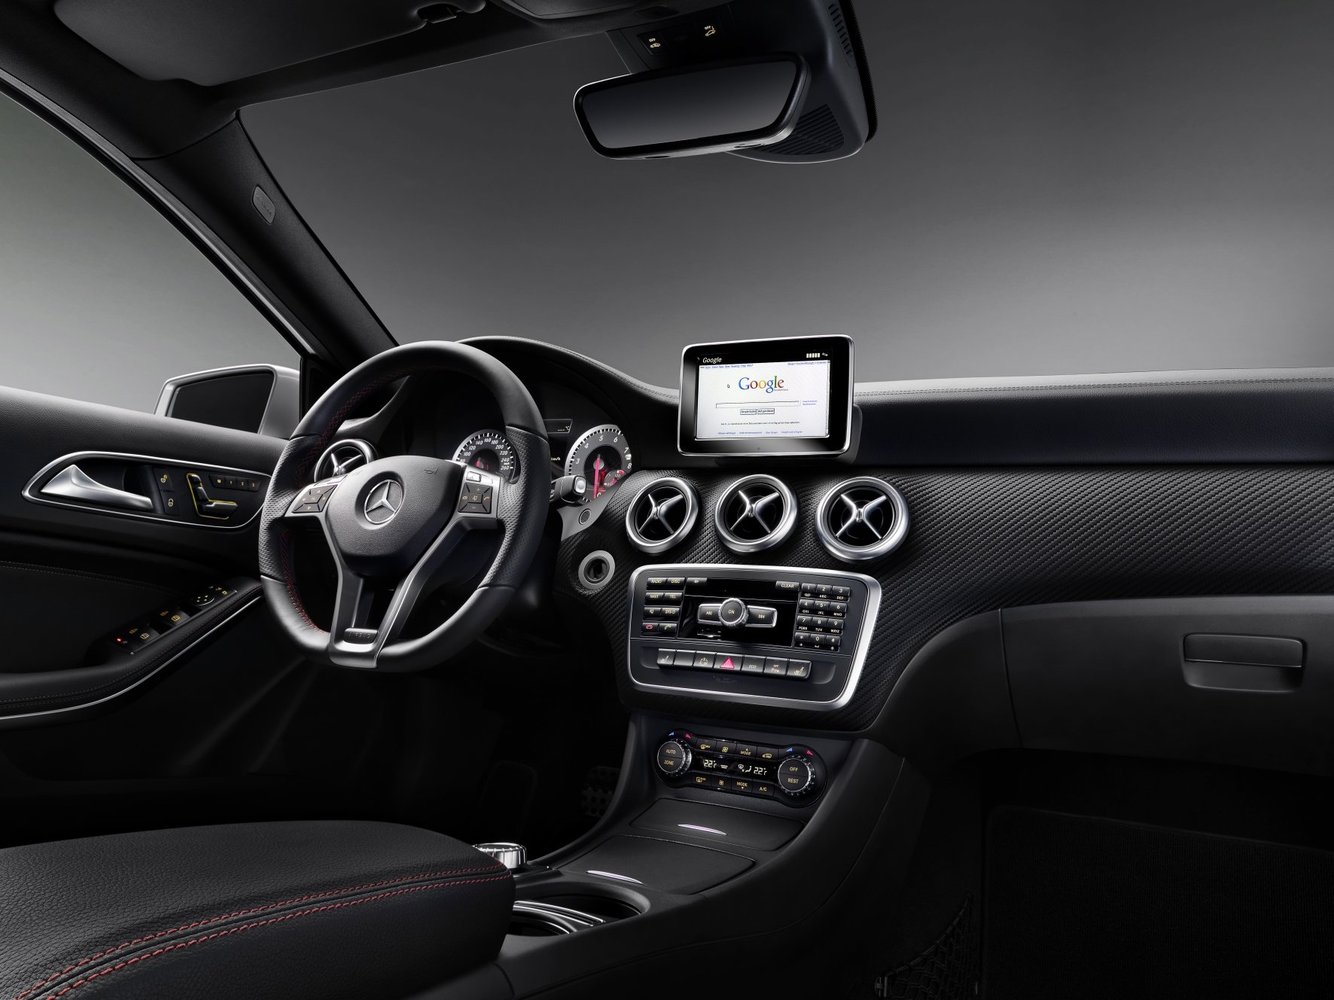 хэтчбек 5 дв. Mercedes-Benz A-klasse 2013 - 2015г выпуска модификация 1.5 AMT (110 л.с.)